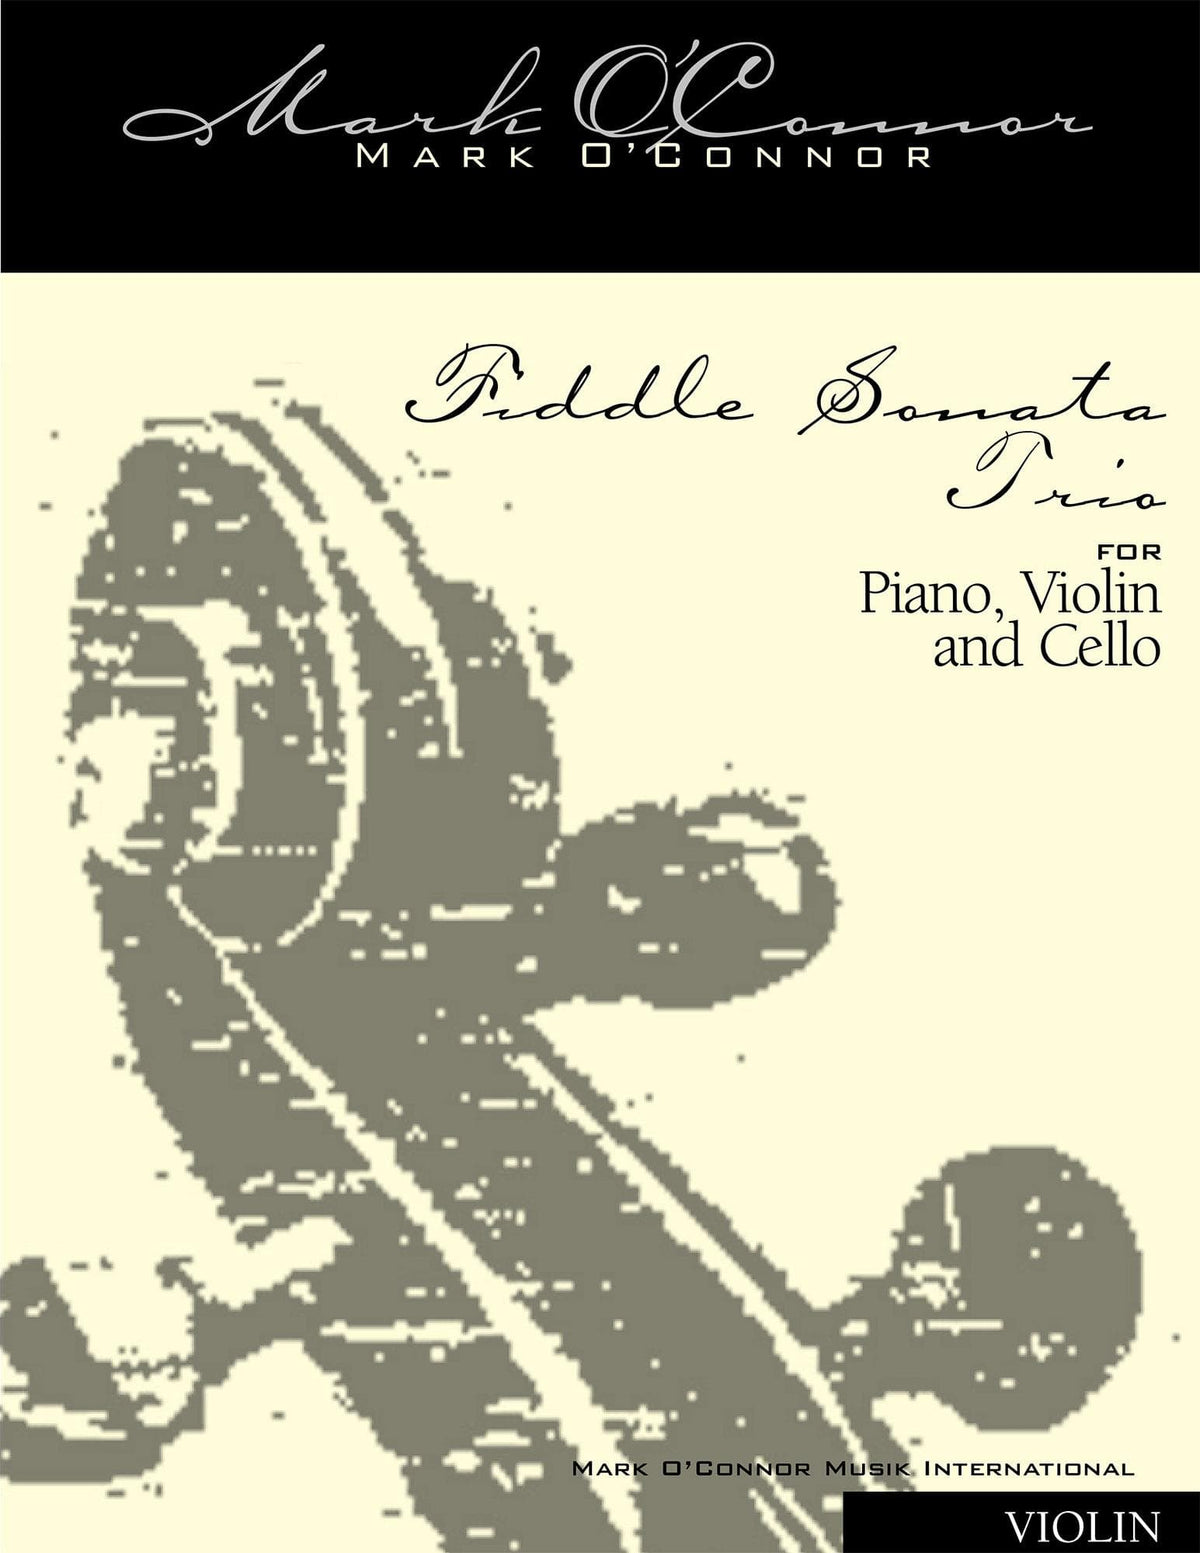 O'Connor, Mark - Fiddle Sonata Trio for Piano, Violin, and Cello - Violin - Digital Download